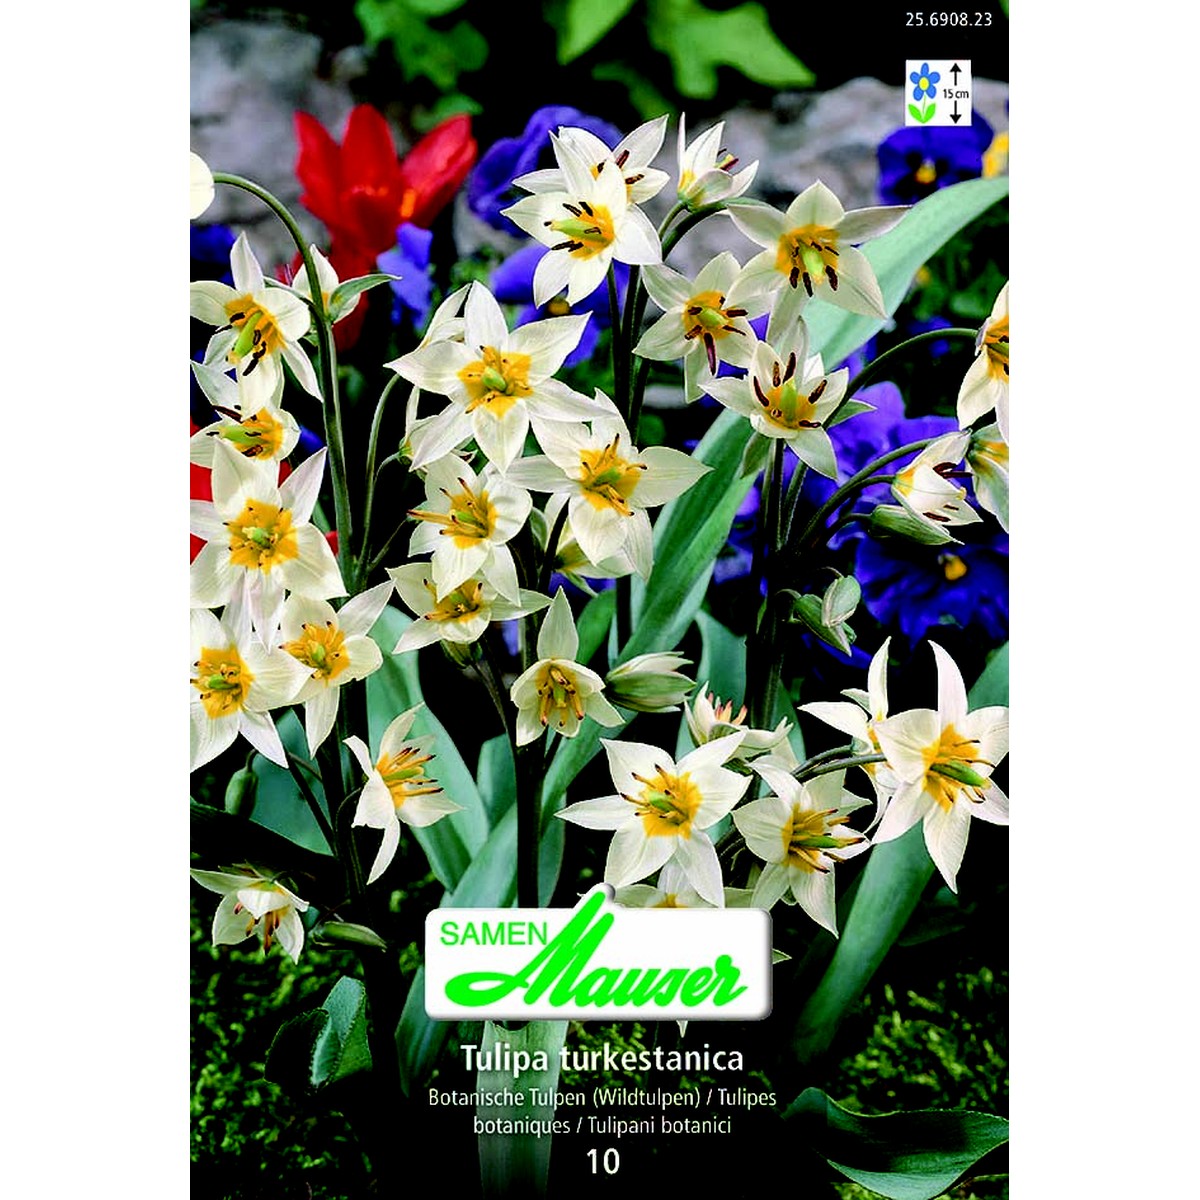   Tulipe botanique turkestanica 10  7/